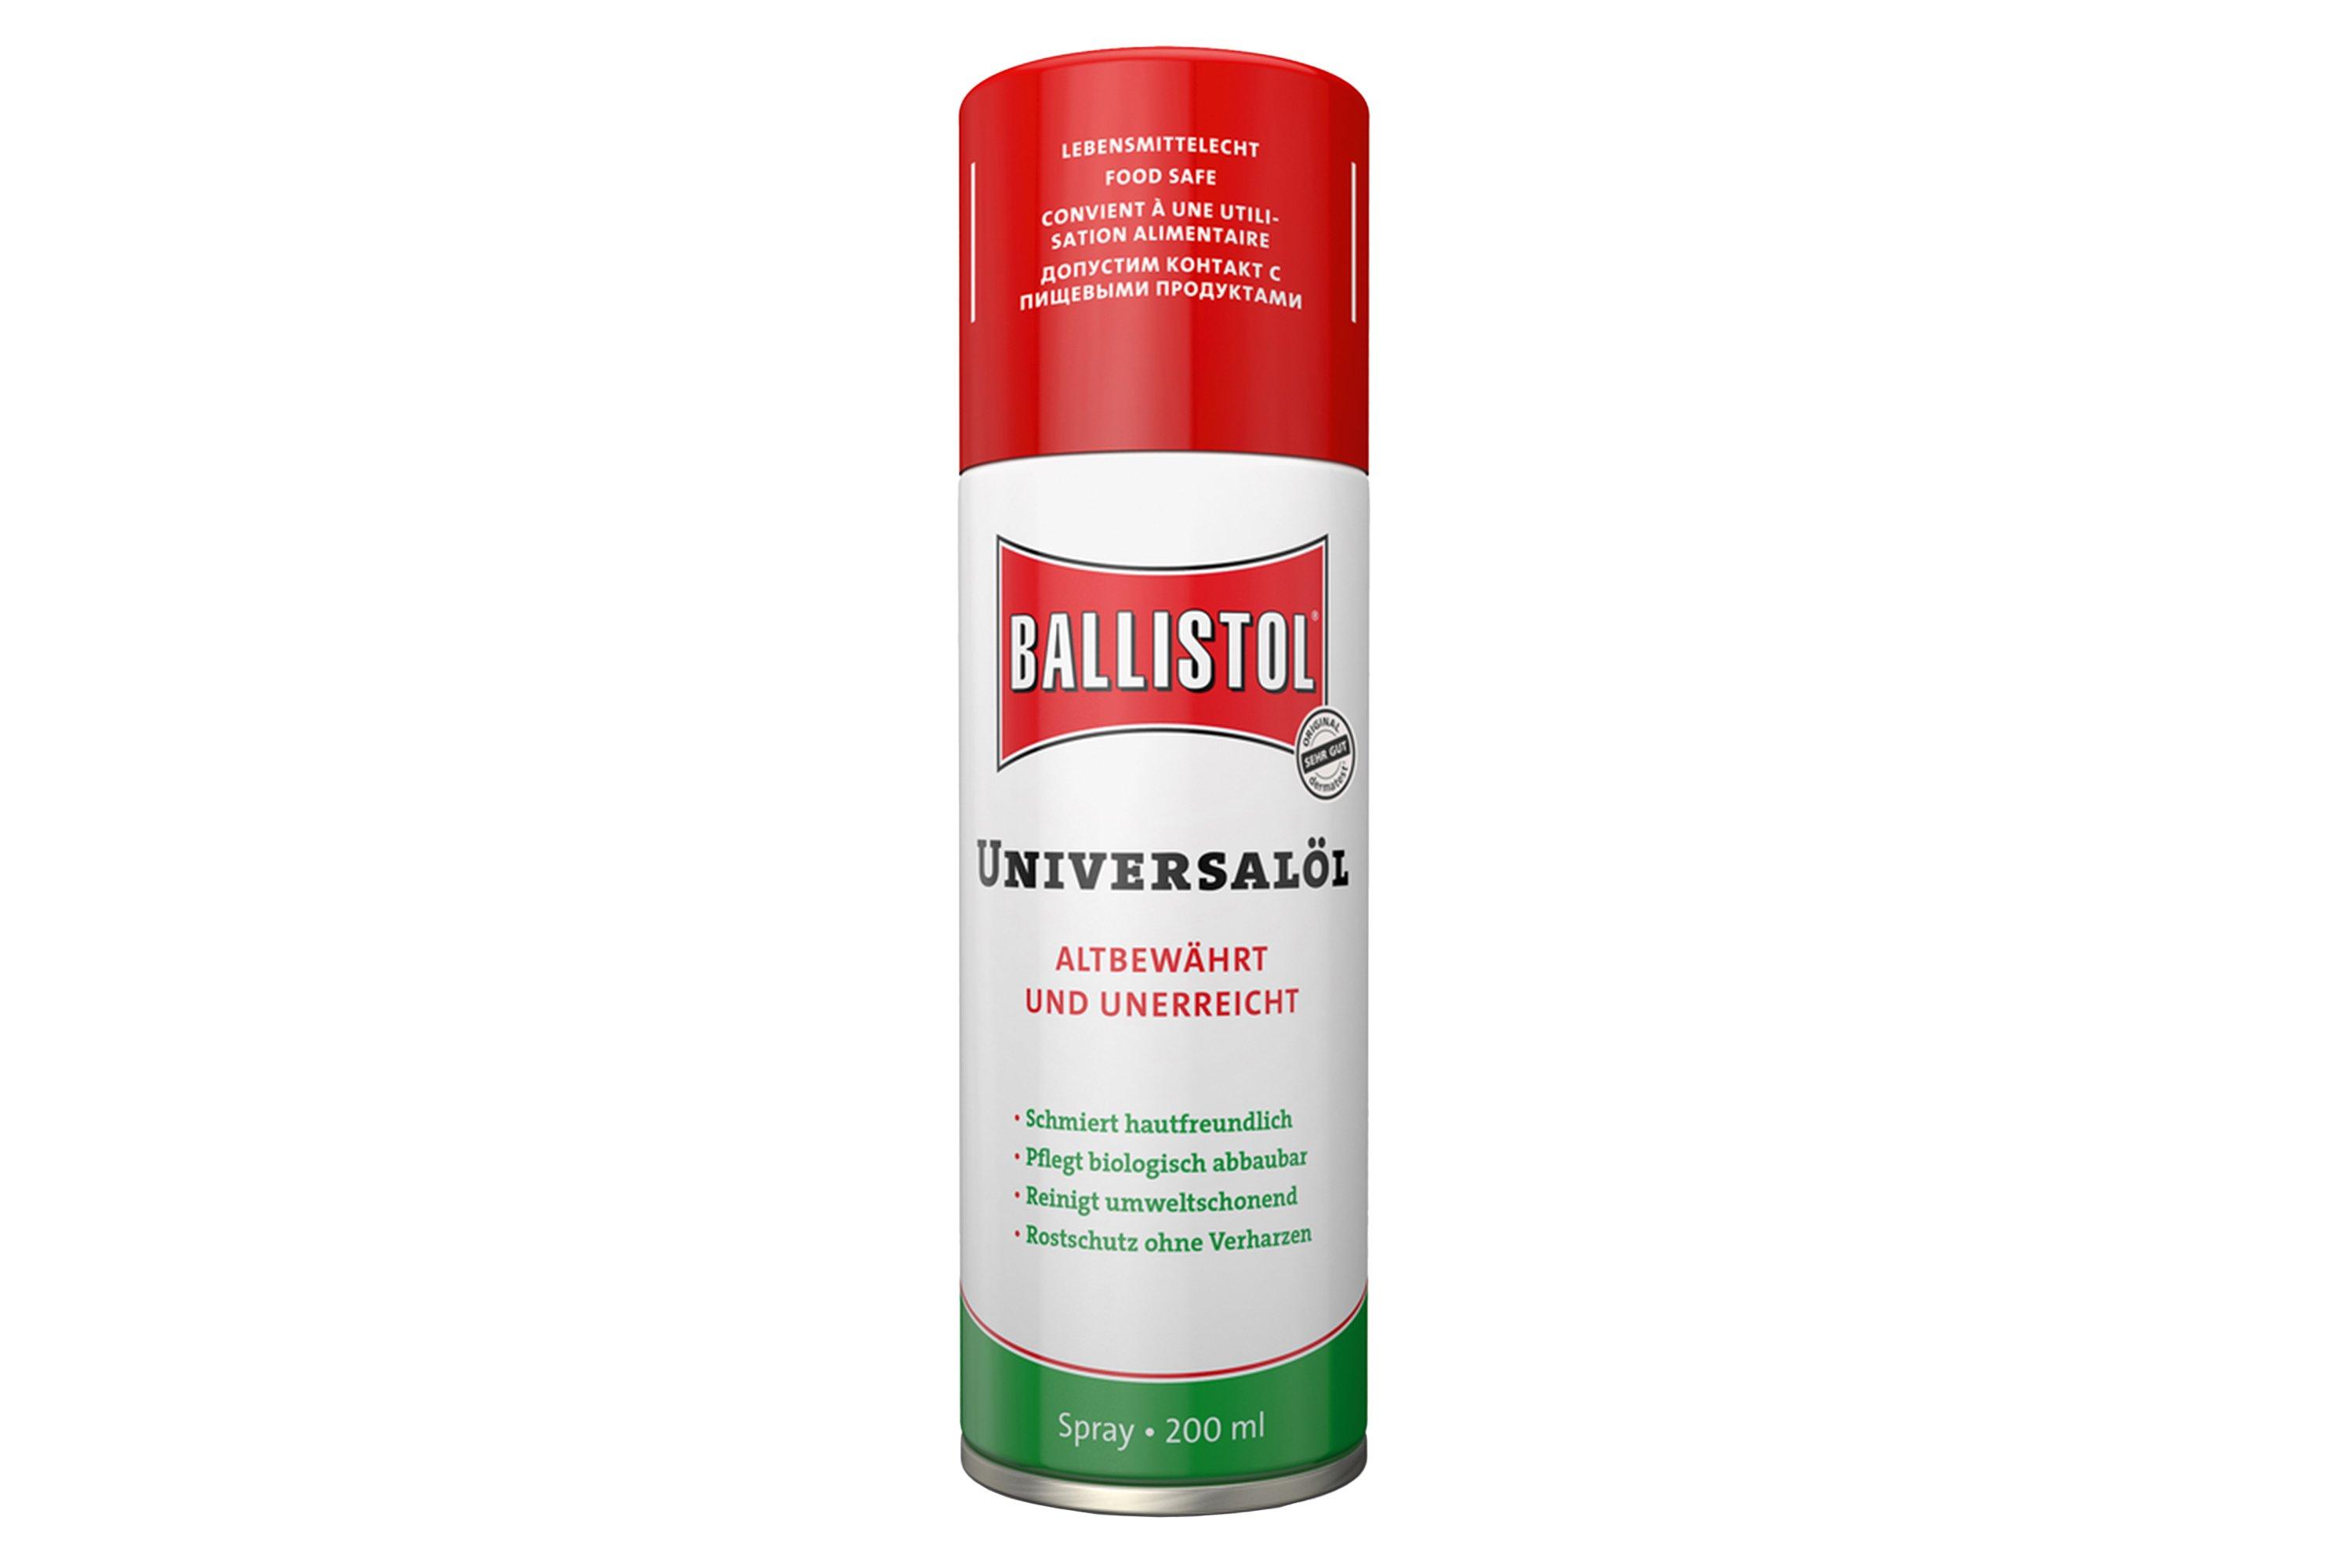 Ballistol huile d'entretien spray, 200 ml  Achetez à prix avantageux chez